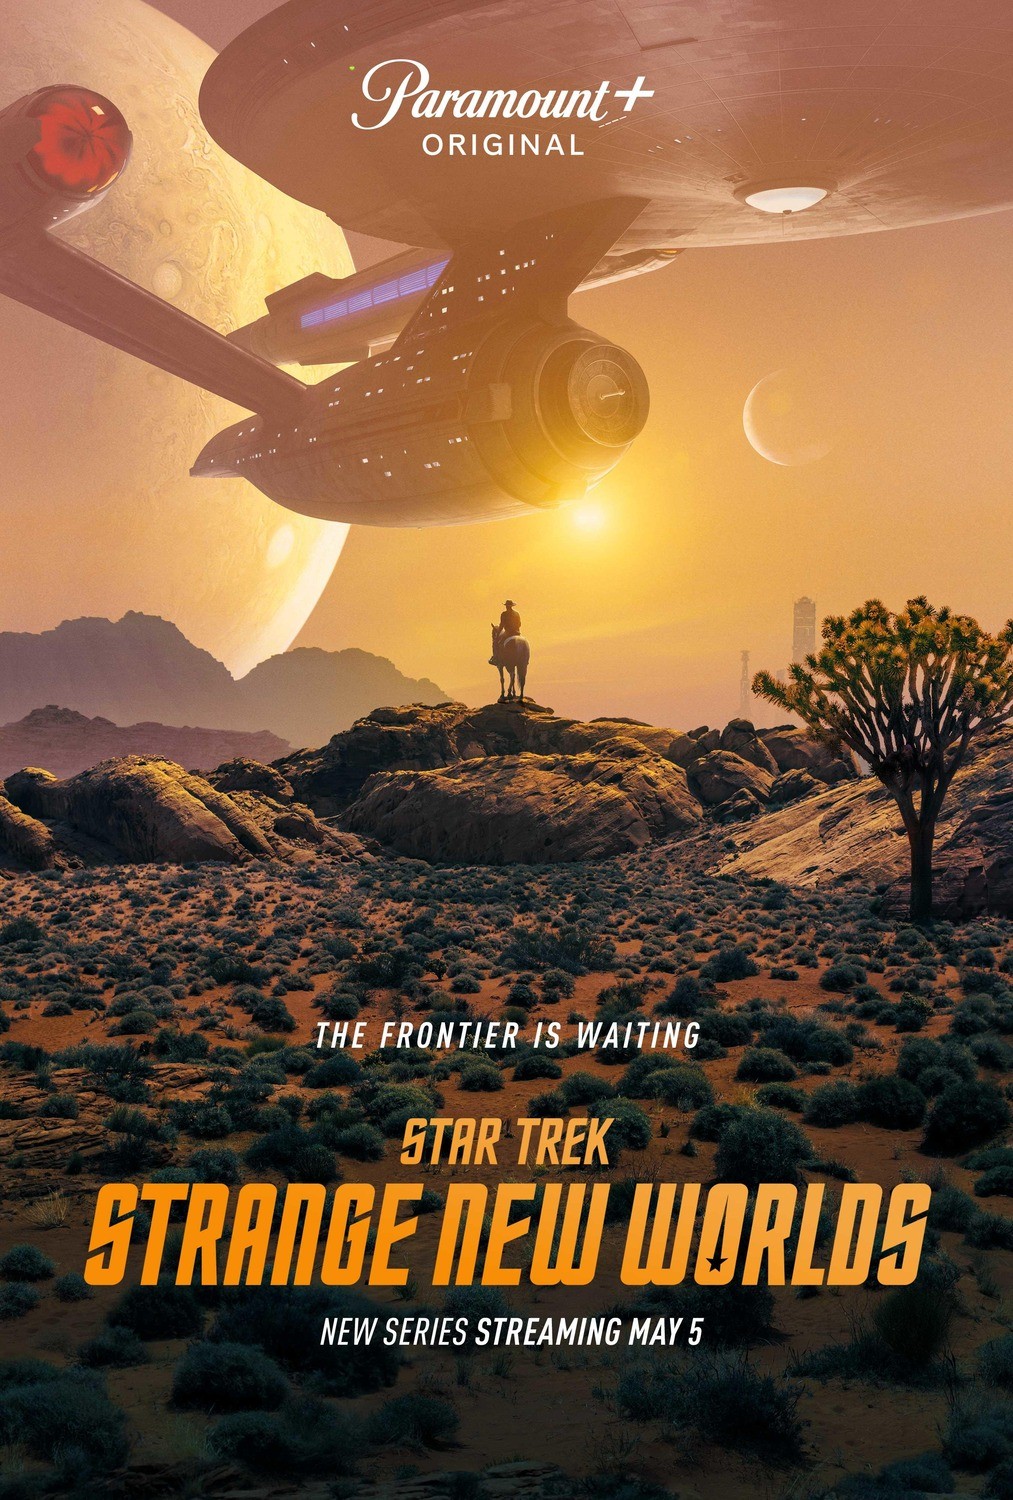 Звездный путь: Странные новые миры: постер N196440